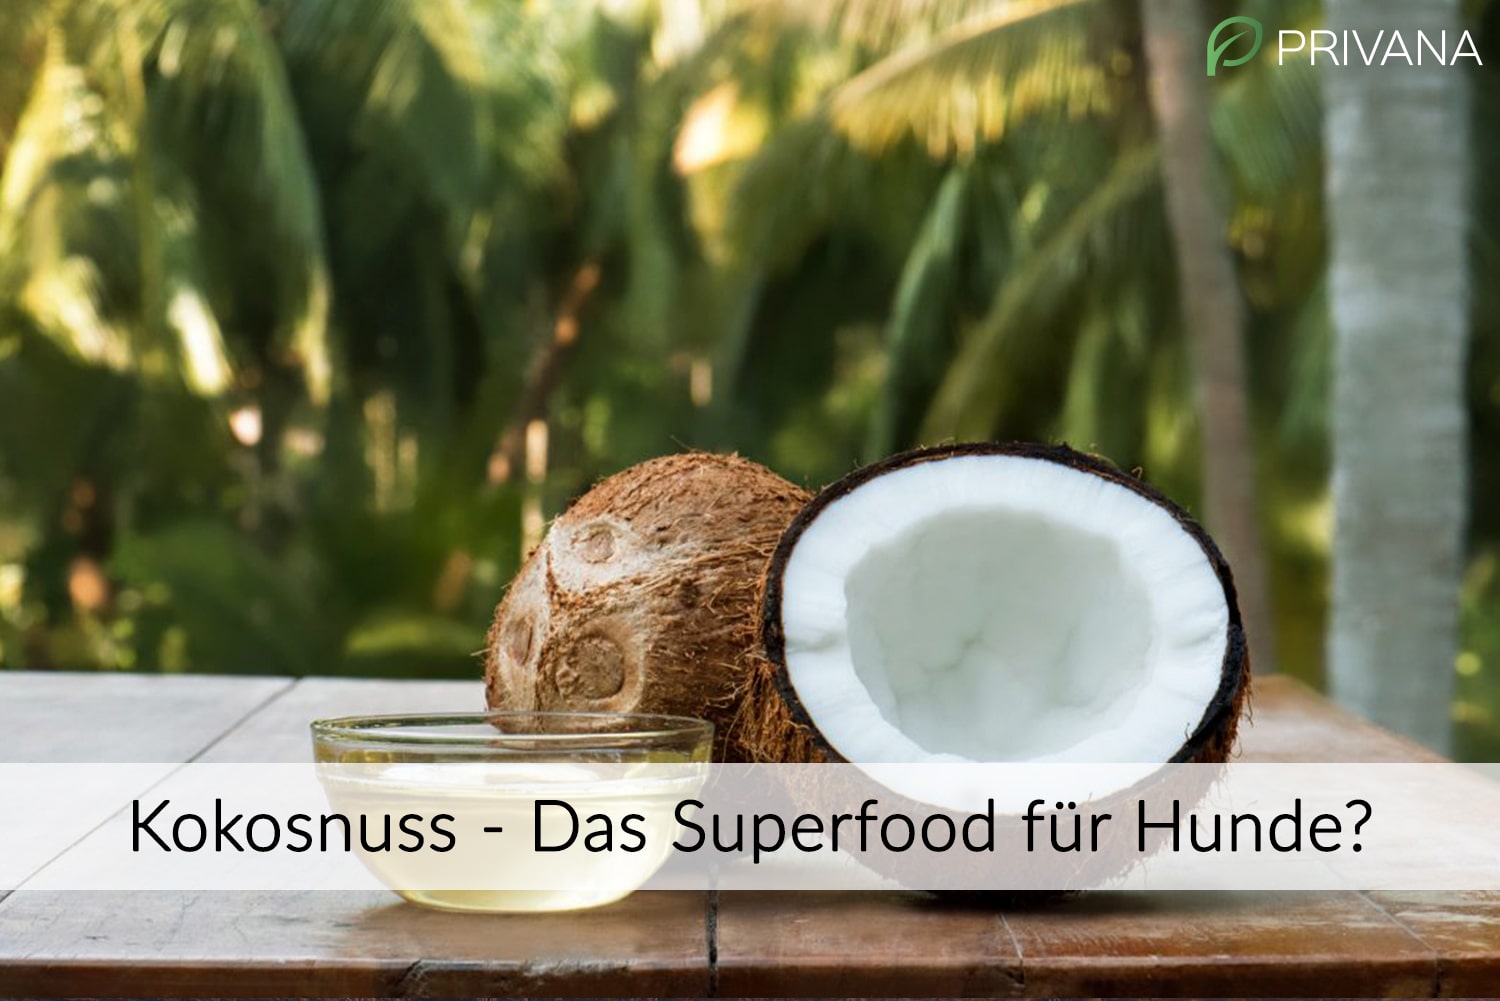 Kokosnuss - Das Superfood für Hunde?